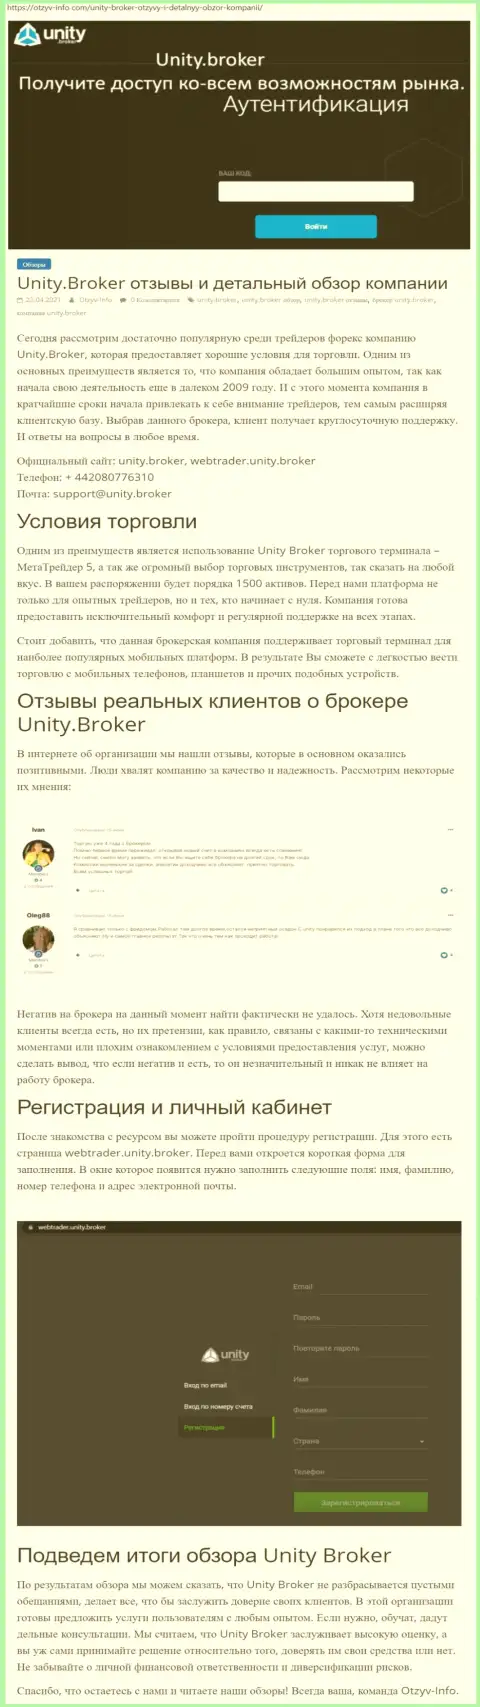 Обзор работы ФОРЕКС-дилингового центра Unity Broker на сайте otzyv info com